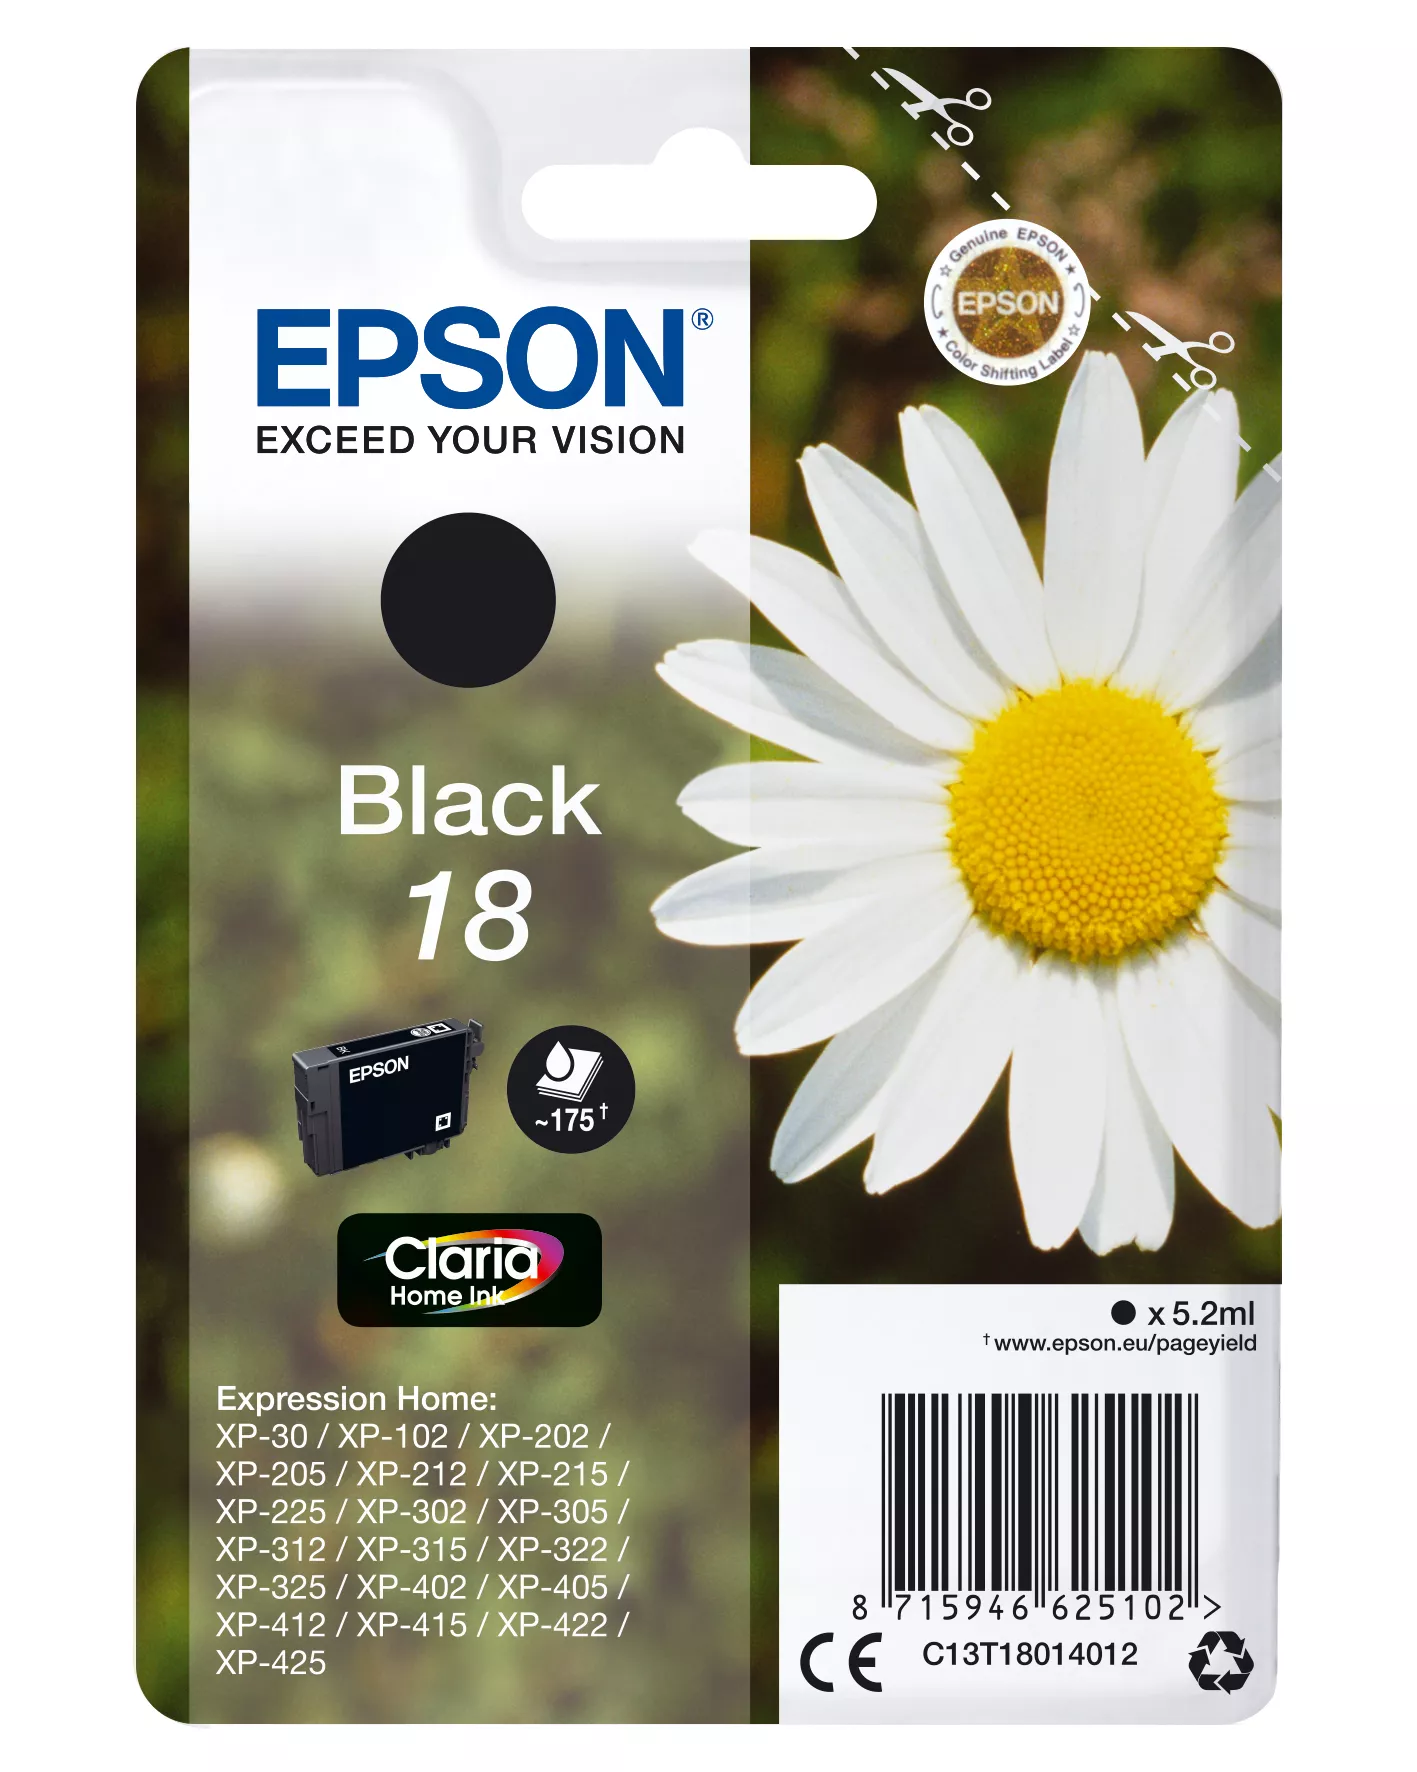 Achat EPSON 18 cartouche d encre noir capacité standard 5.2ml 175 et autres produits de la marque Epson